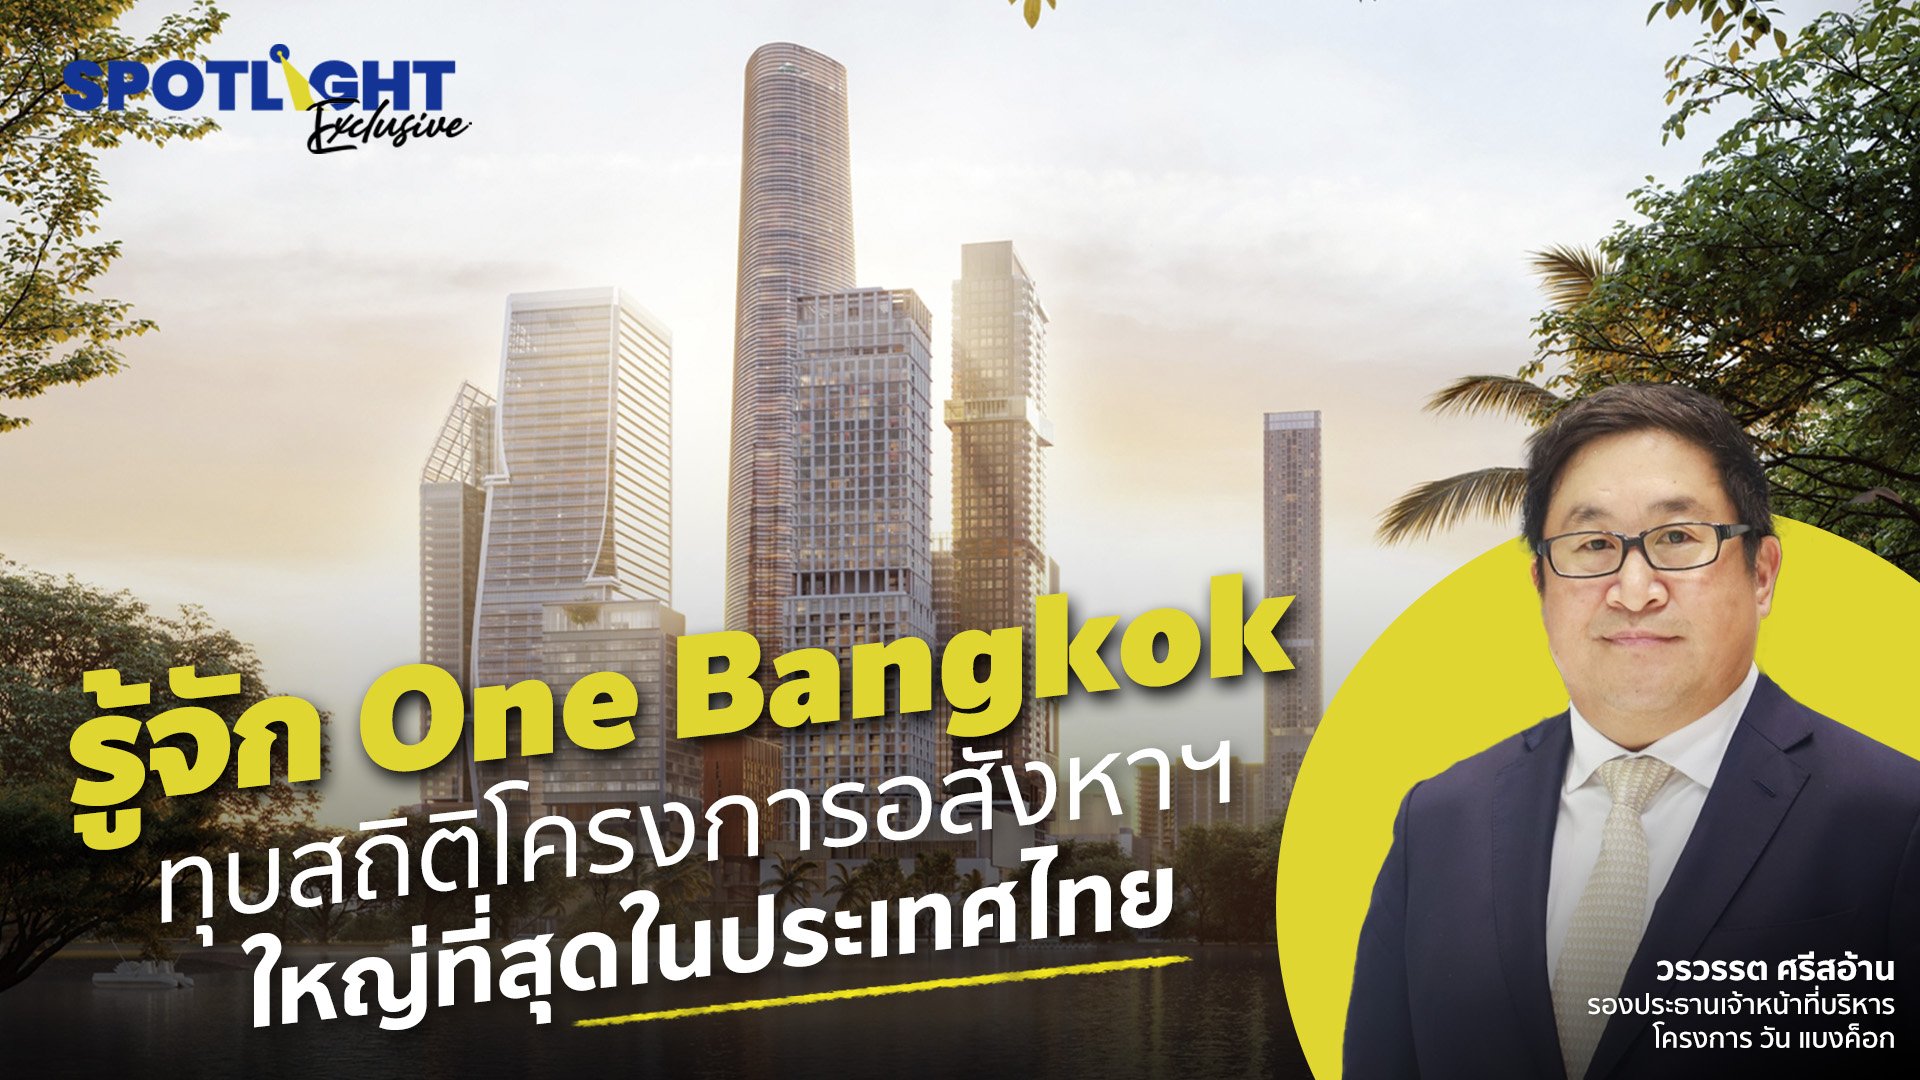 รู้จัก One Bangkok ทุบสถิติโครงการอสังหาฯ ใหญ่ที่สุดในประเทศไทย | Spotlight | 3 ต.ค. 65 | AMARIN TVHD34